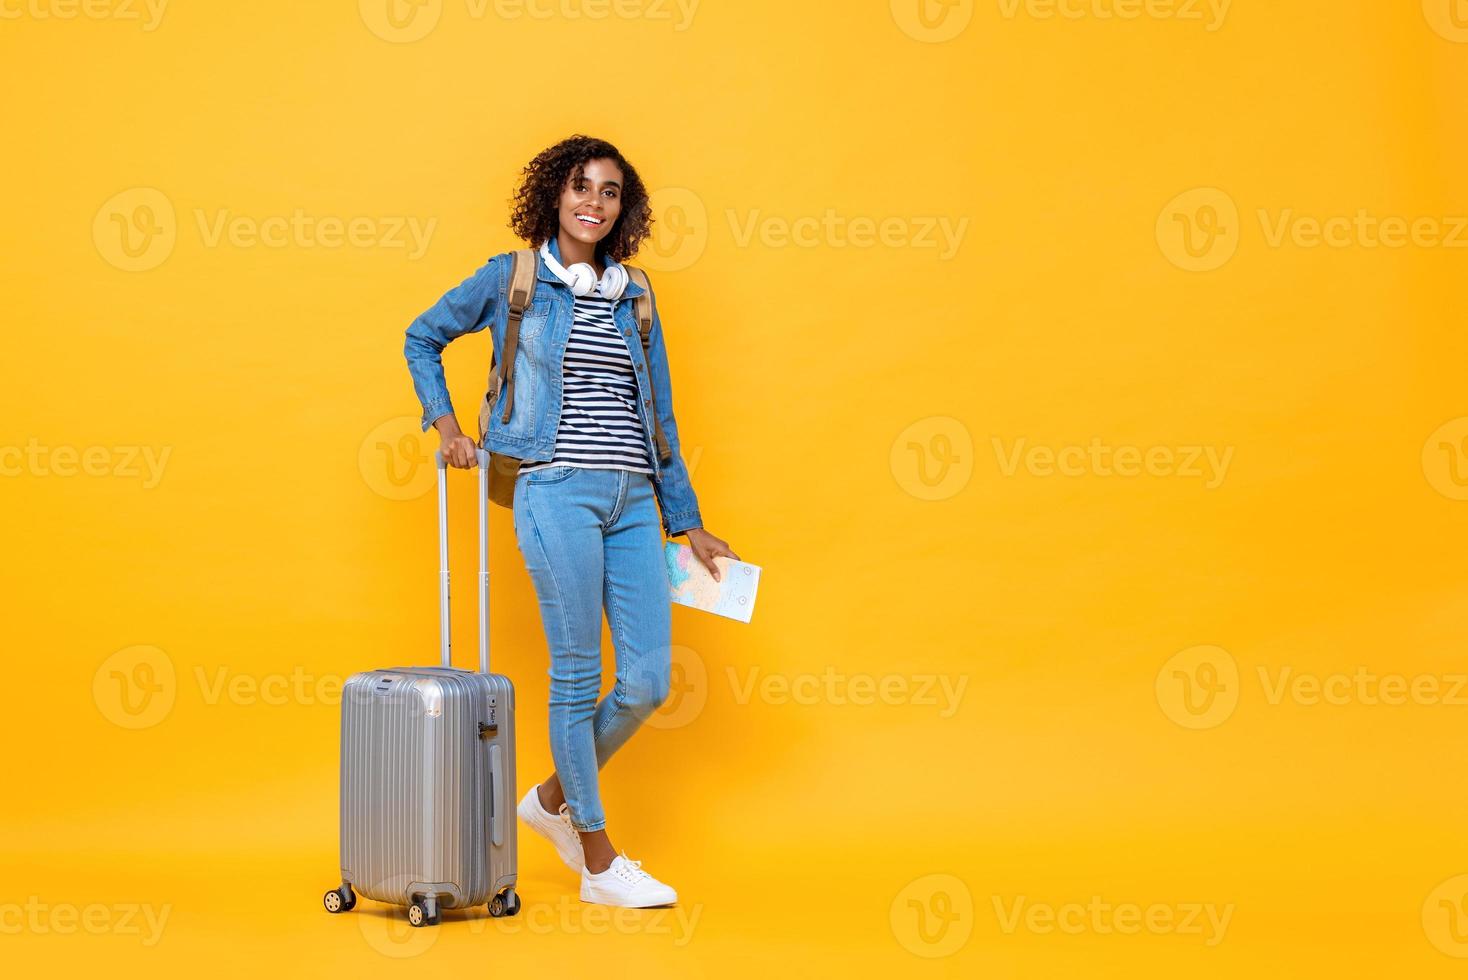 fullängds reseporträtt av leende ung afroamerikansk kvinna backpacker som står och håller bagage på gul studiobakgrund foto